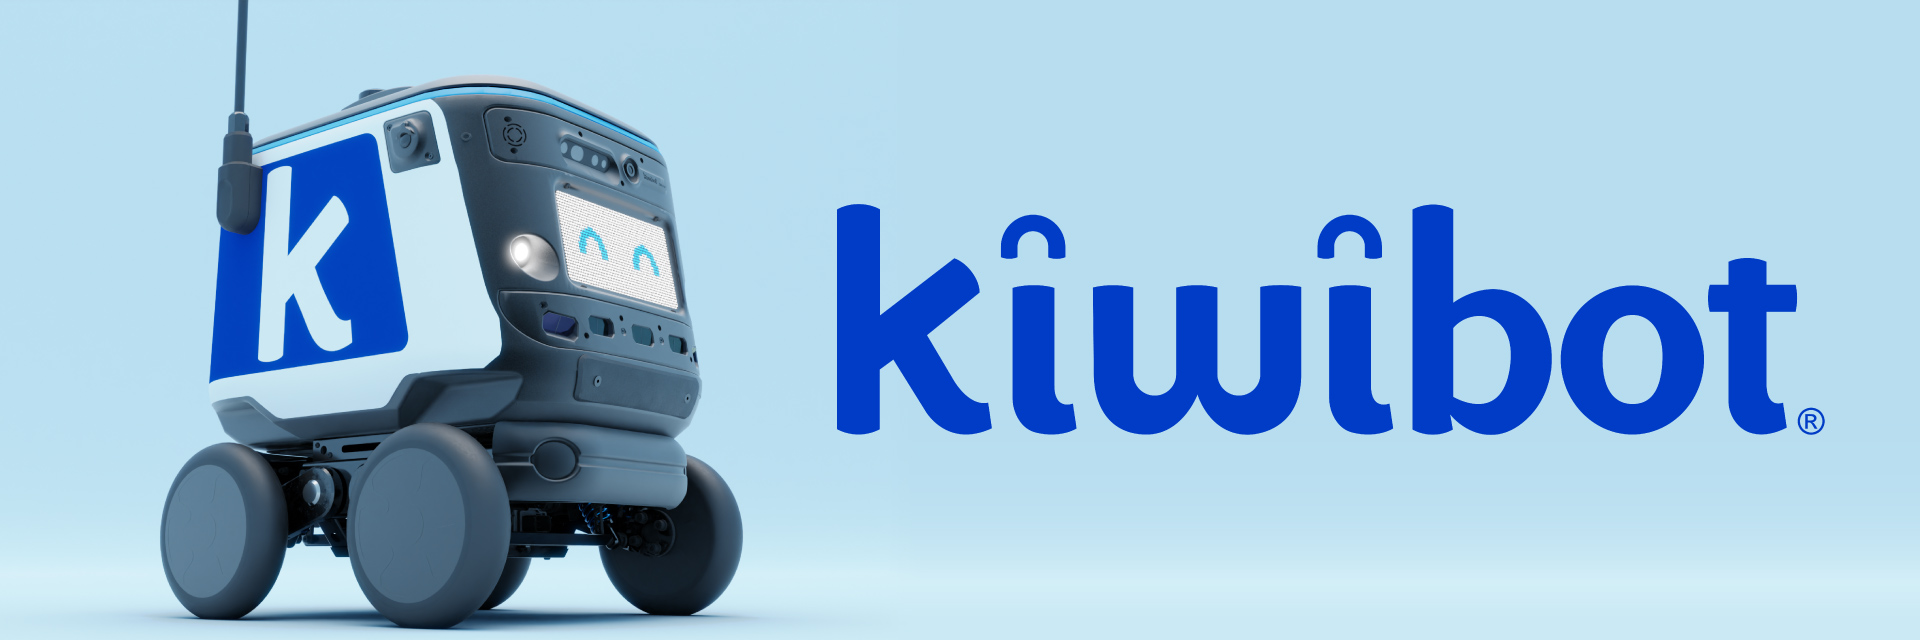 kiwibot